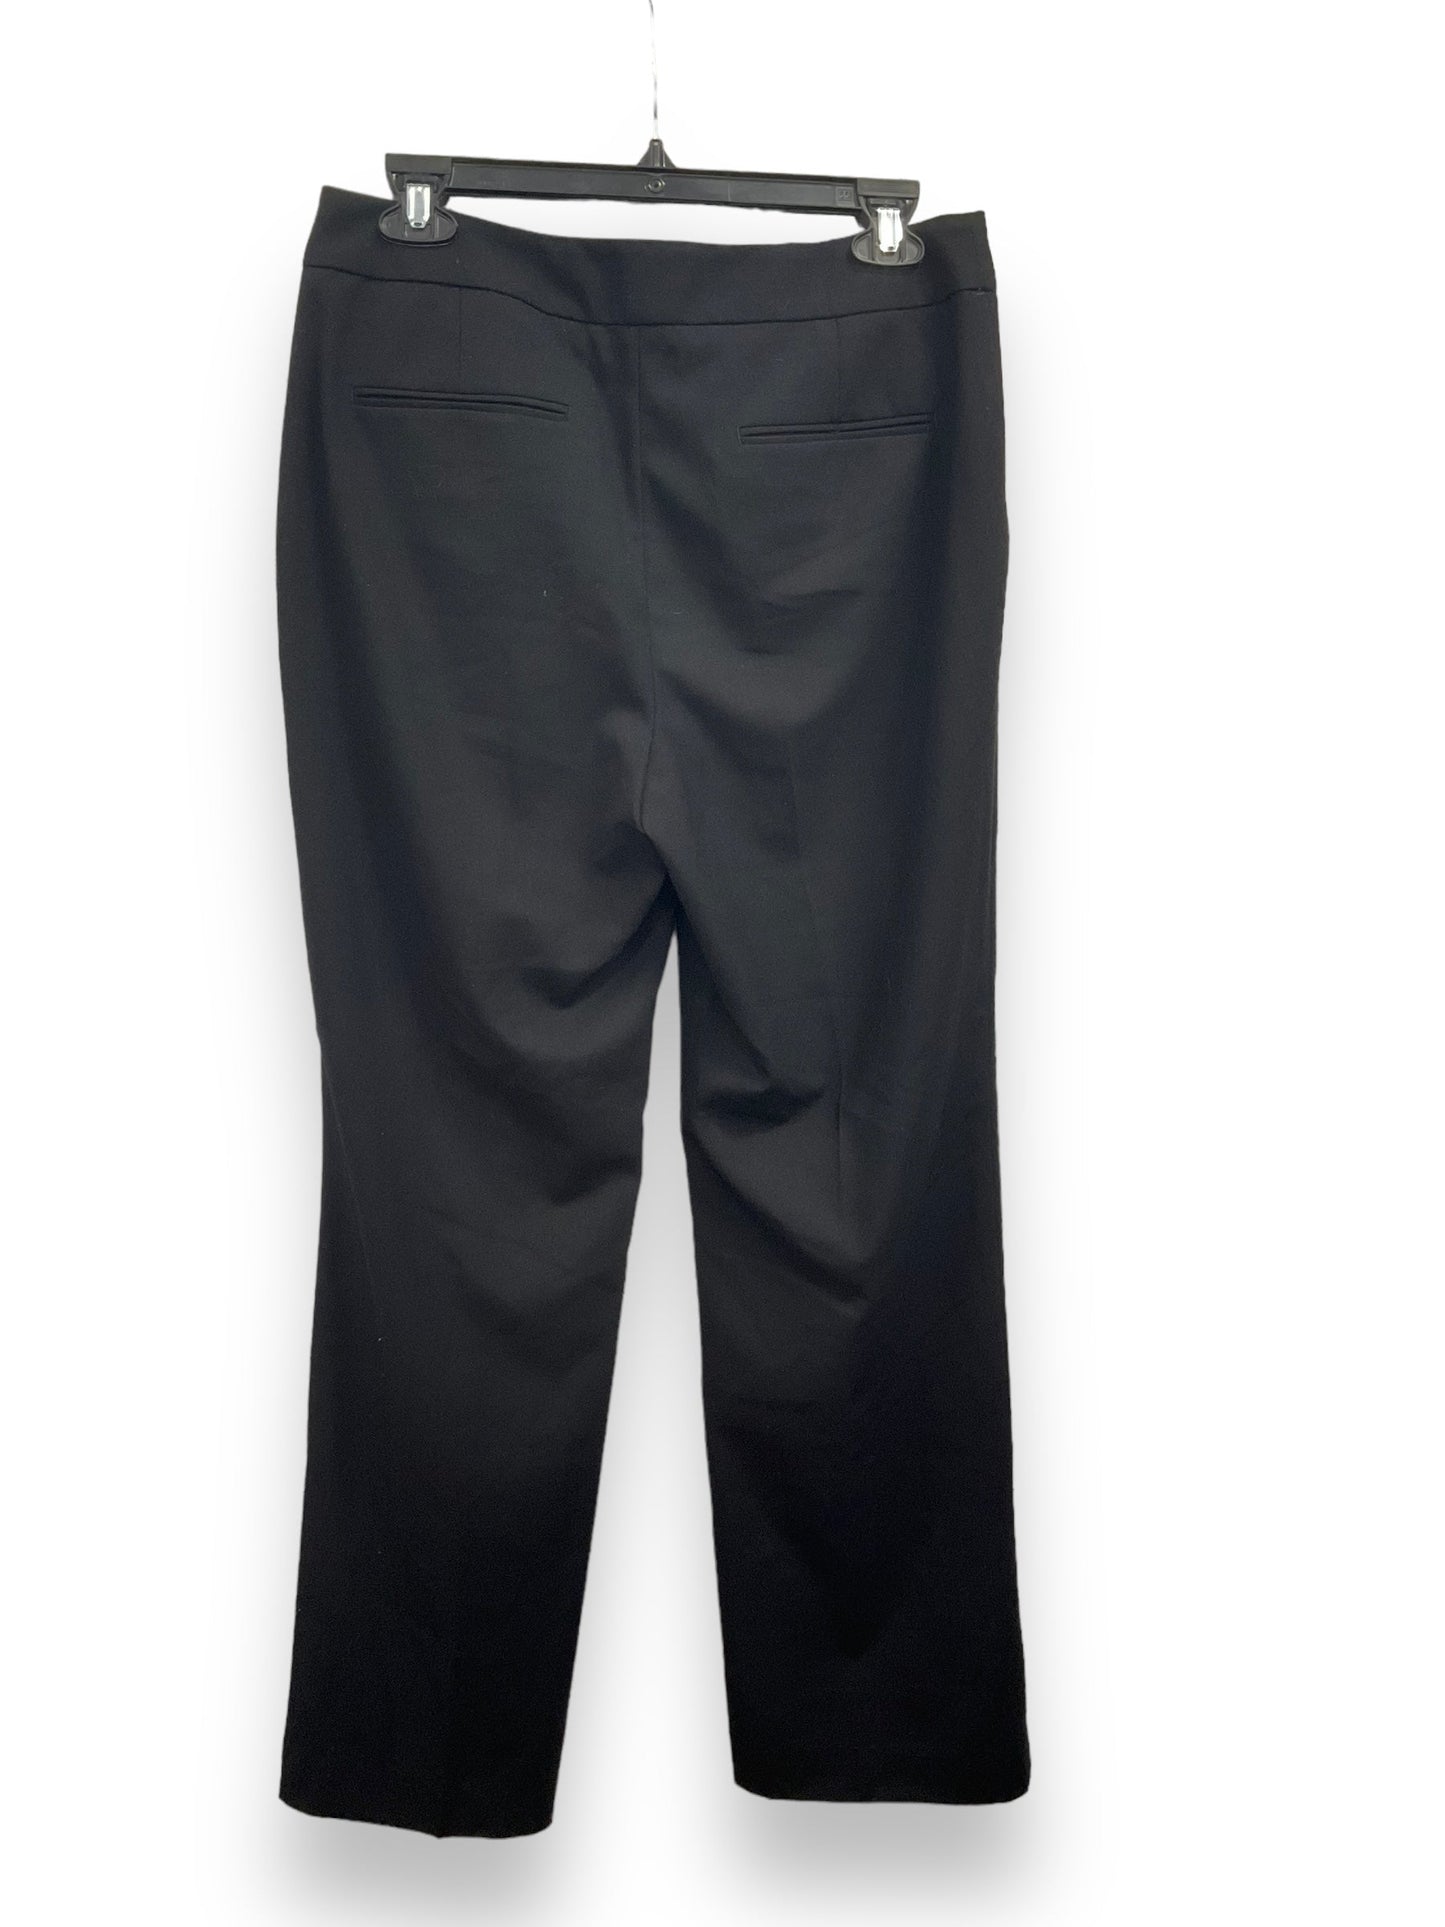 Black Pants Dress Banana Republic, Size 6